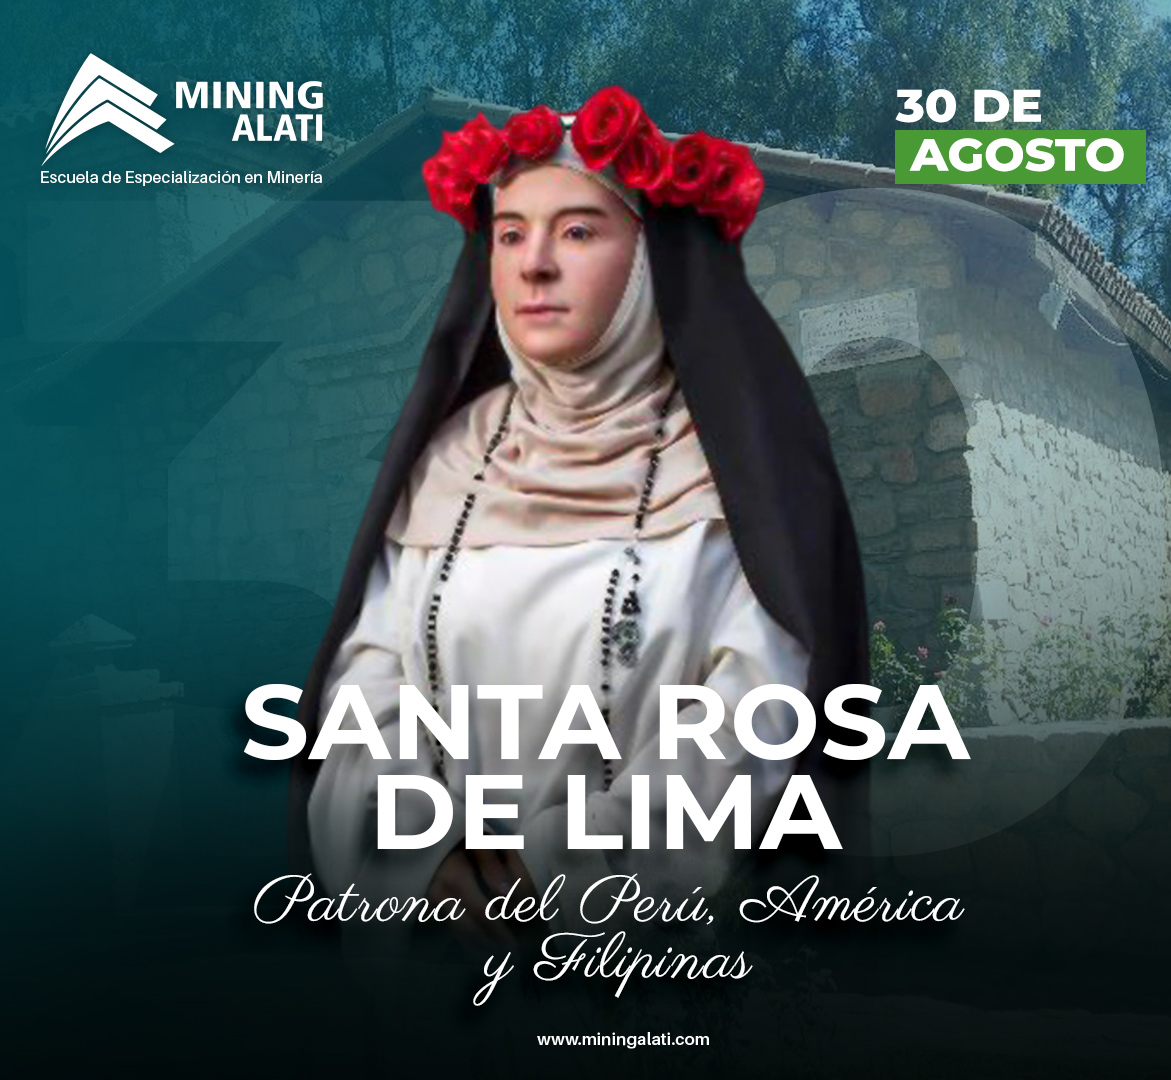 🌹⛪️ Hoy celebramos el día de Santa Rosa de Lima 'Nuestra Patrona del Perú, América y Filipinas
#MiningAlati #SantaRosaDeLima #PatronaDeAmerica #díadesantarosadelima🌹